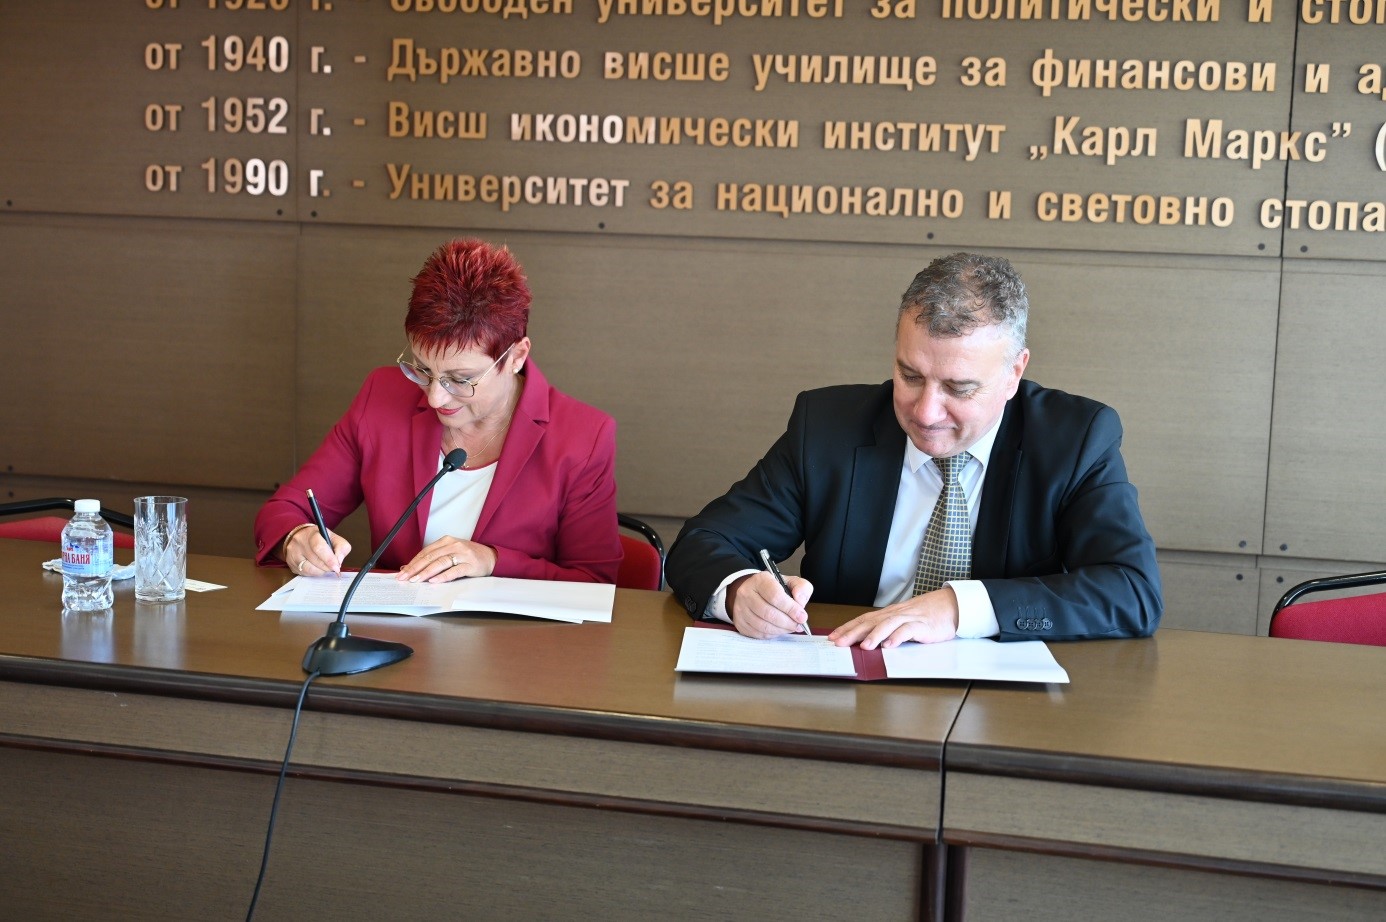 Община Тетевен подписа меморандум за сътрудничество с УНСС